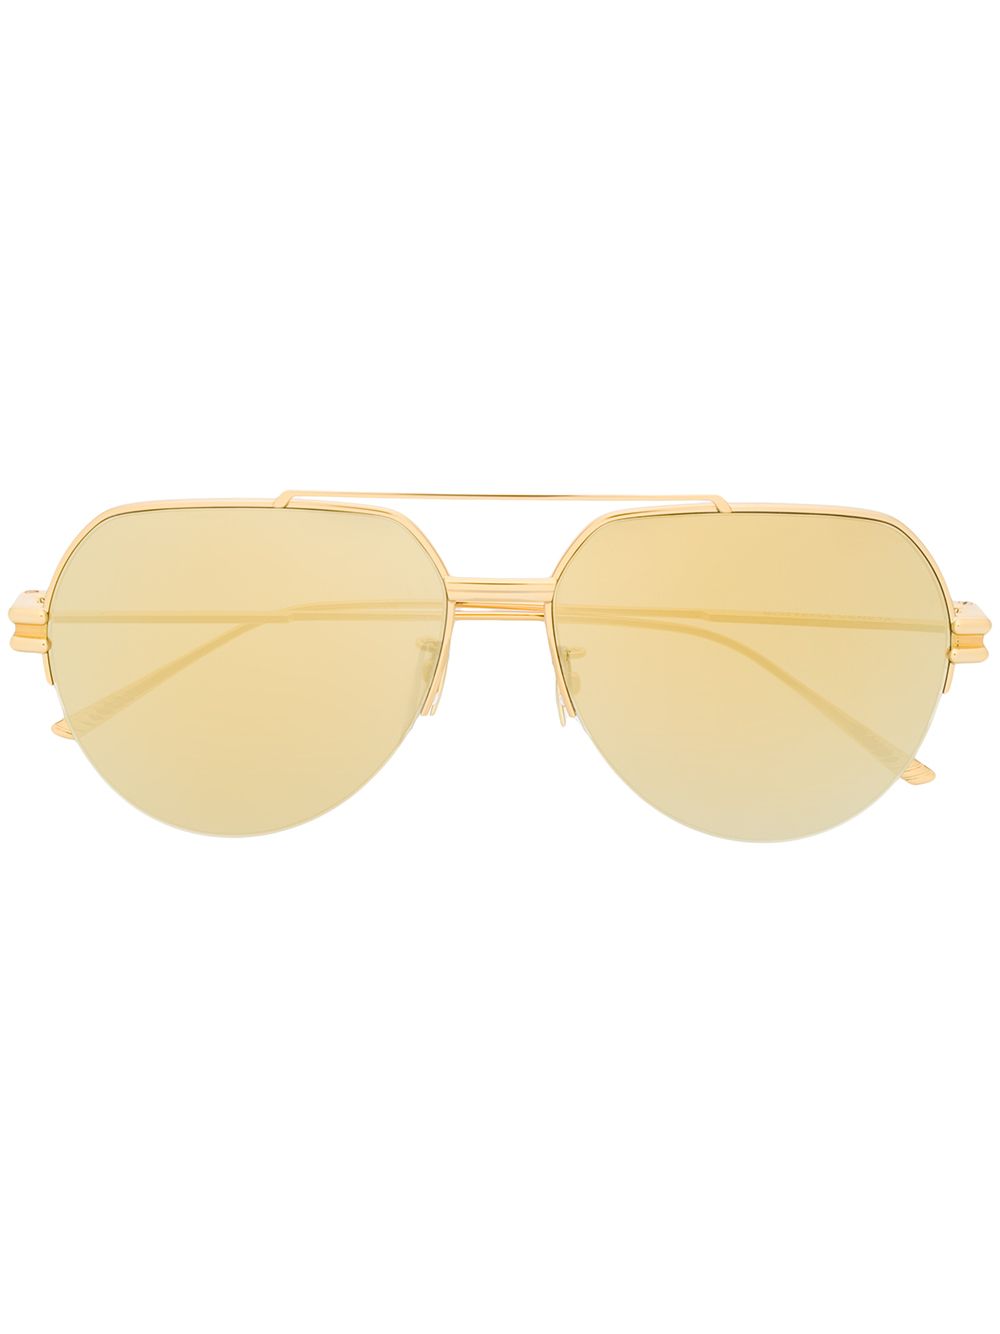 фото Bottega veneta eyewear солнцезащитные очки-авиаторы